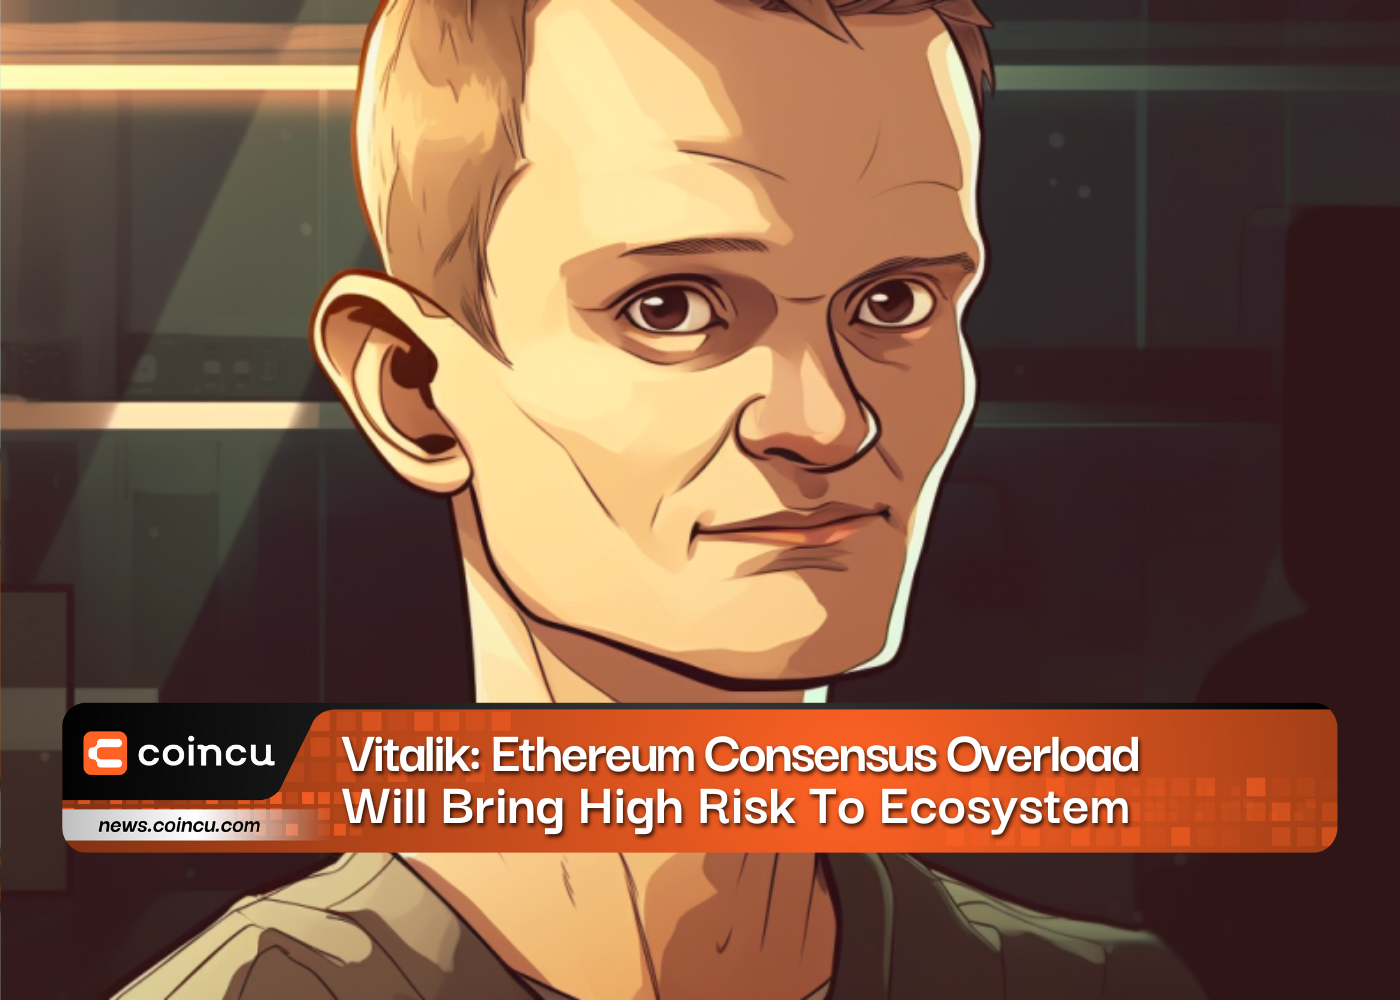 Vitalik: la surcharge d'Ethereum Consensus entraînera un risque élevé pour l'écosystème